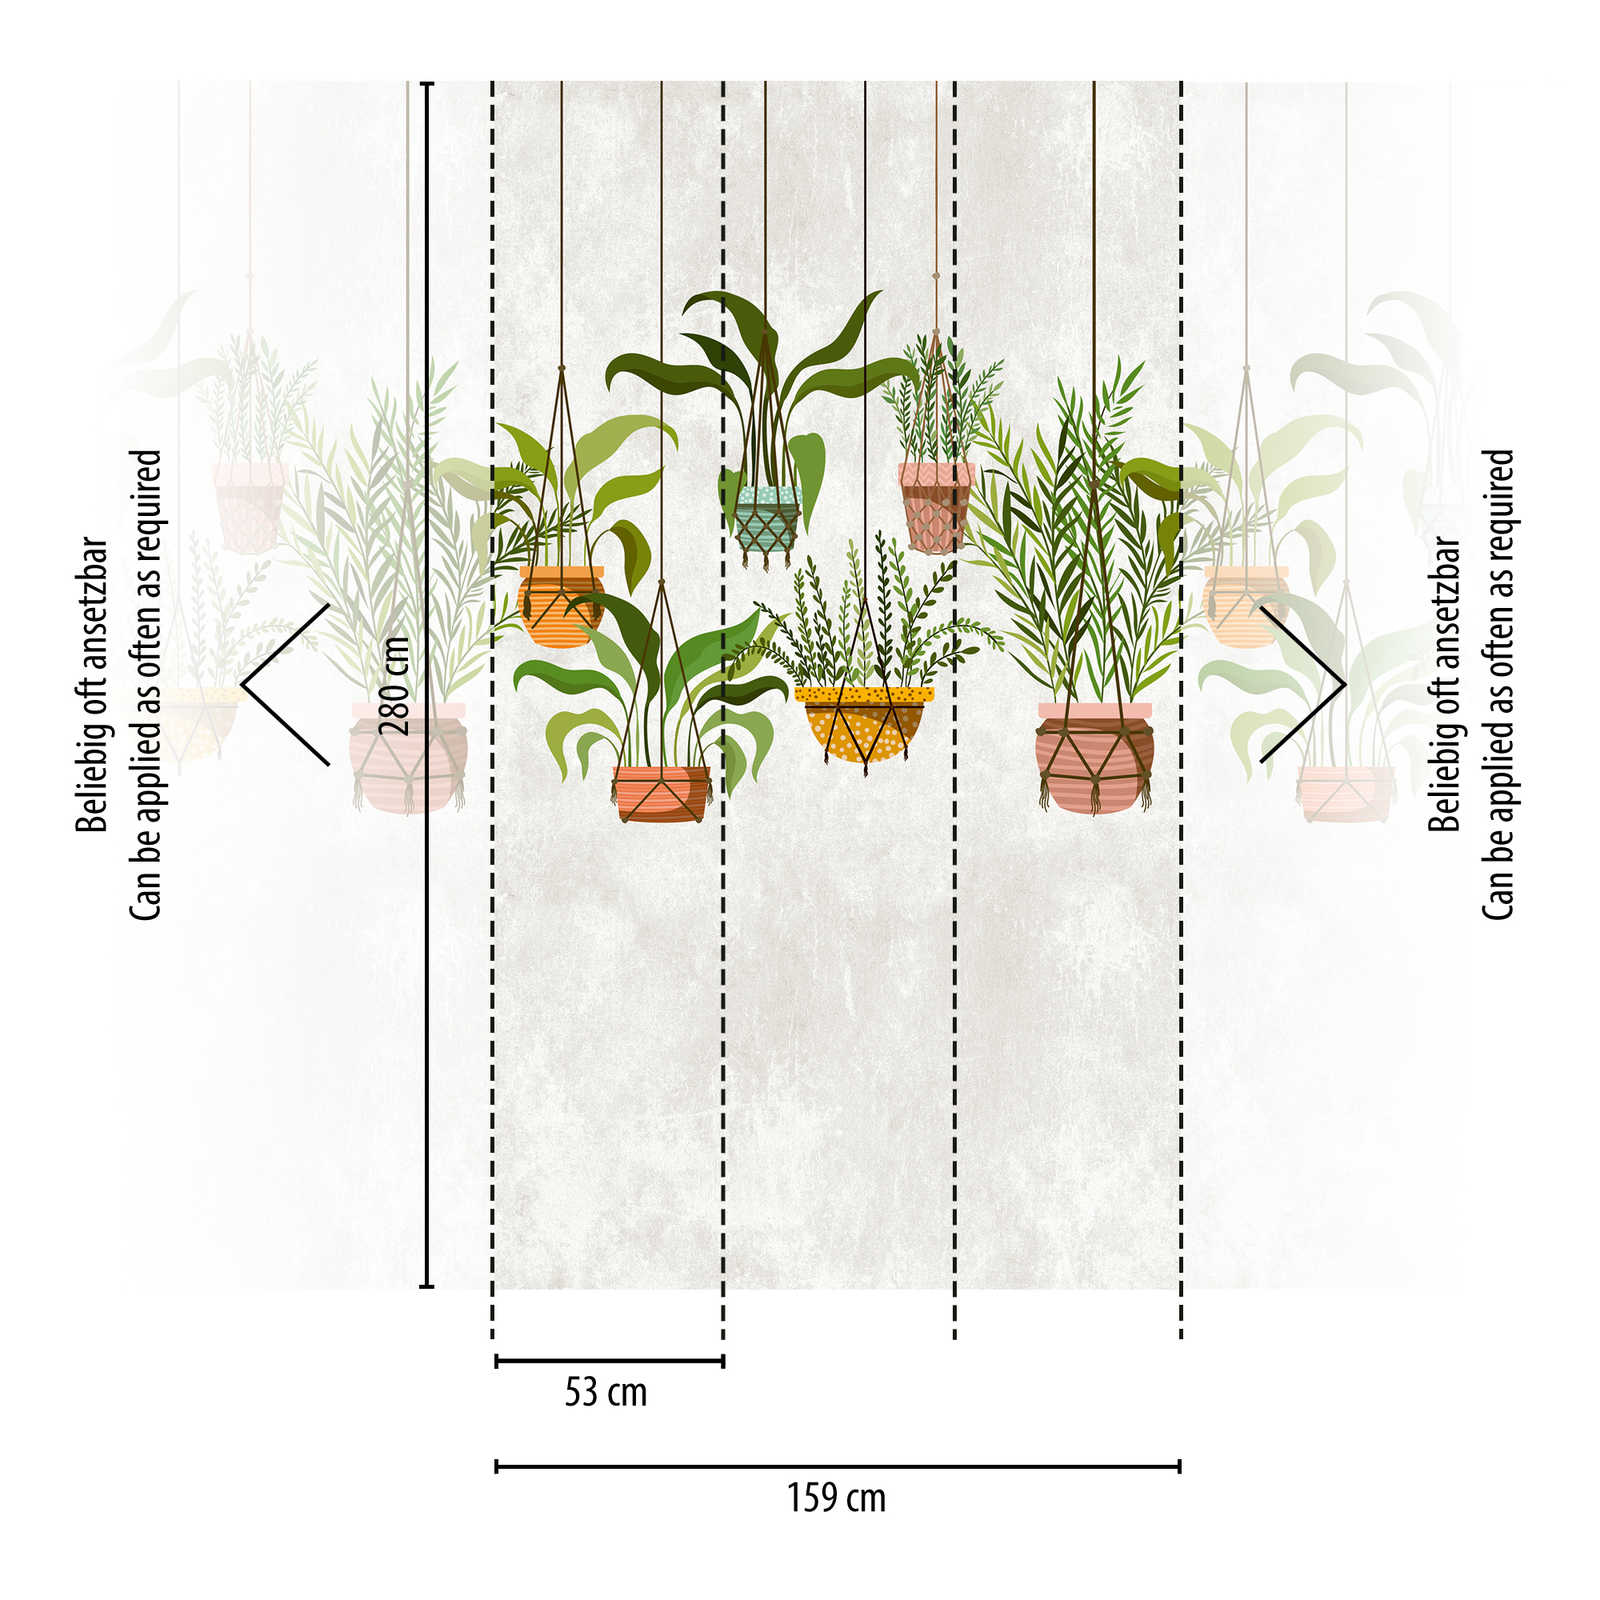             Tapeten Neuheit | Motivtapete hängende Pflanzen botanisches Dekor
        